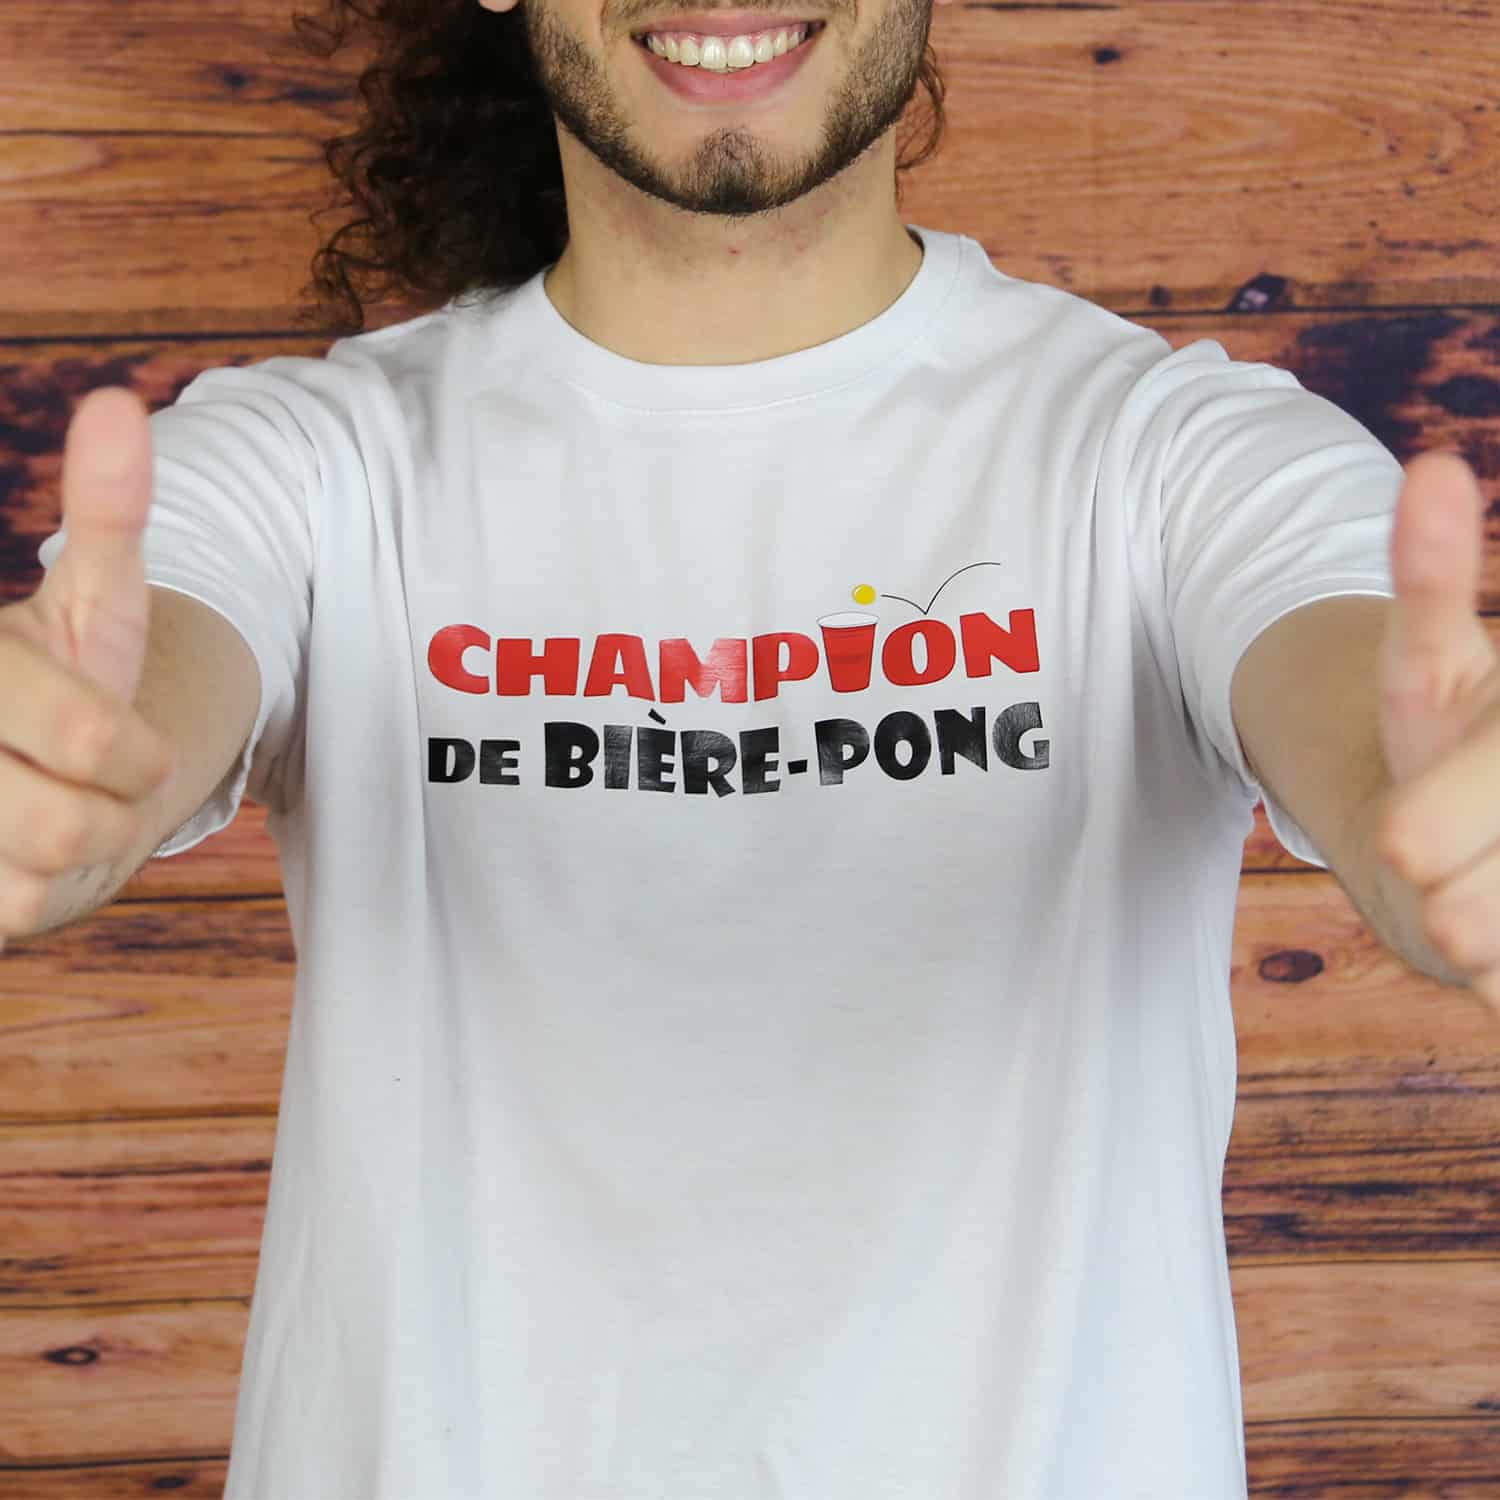 tee shirt homme humour | Cadeau imprimé en France | 100% coton, 185gr | on  signe tous